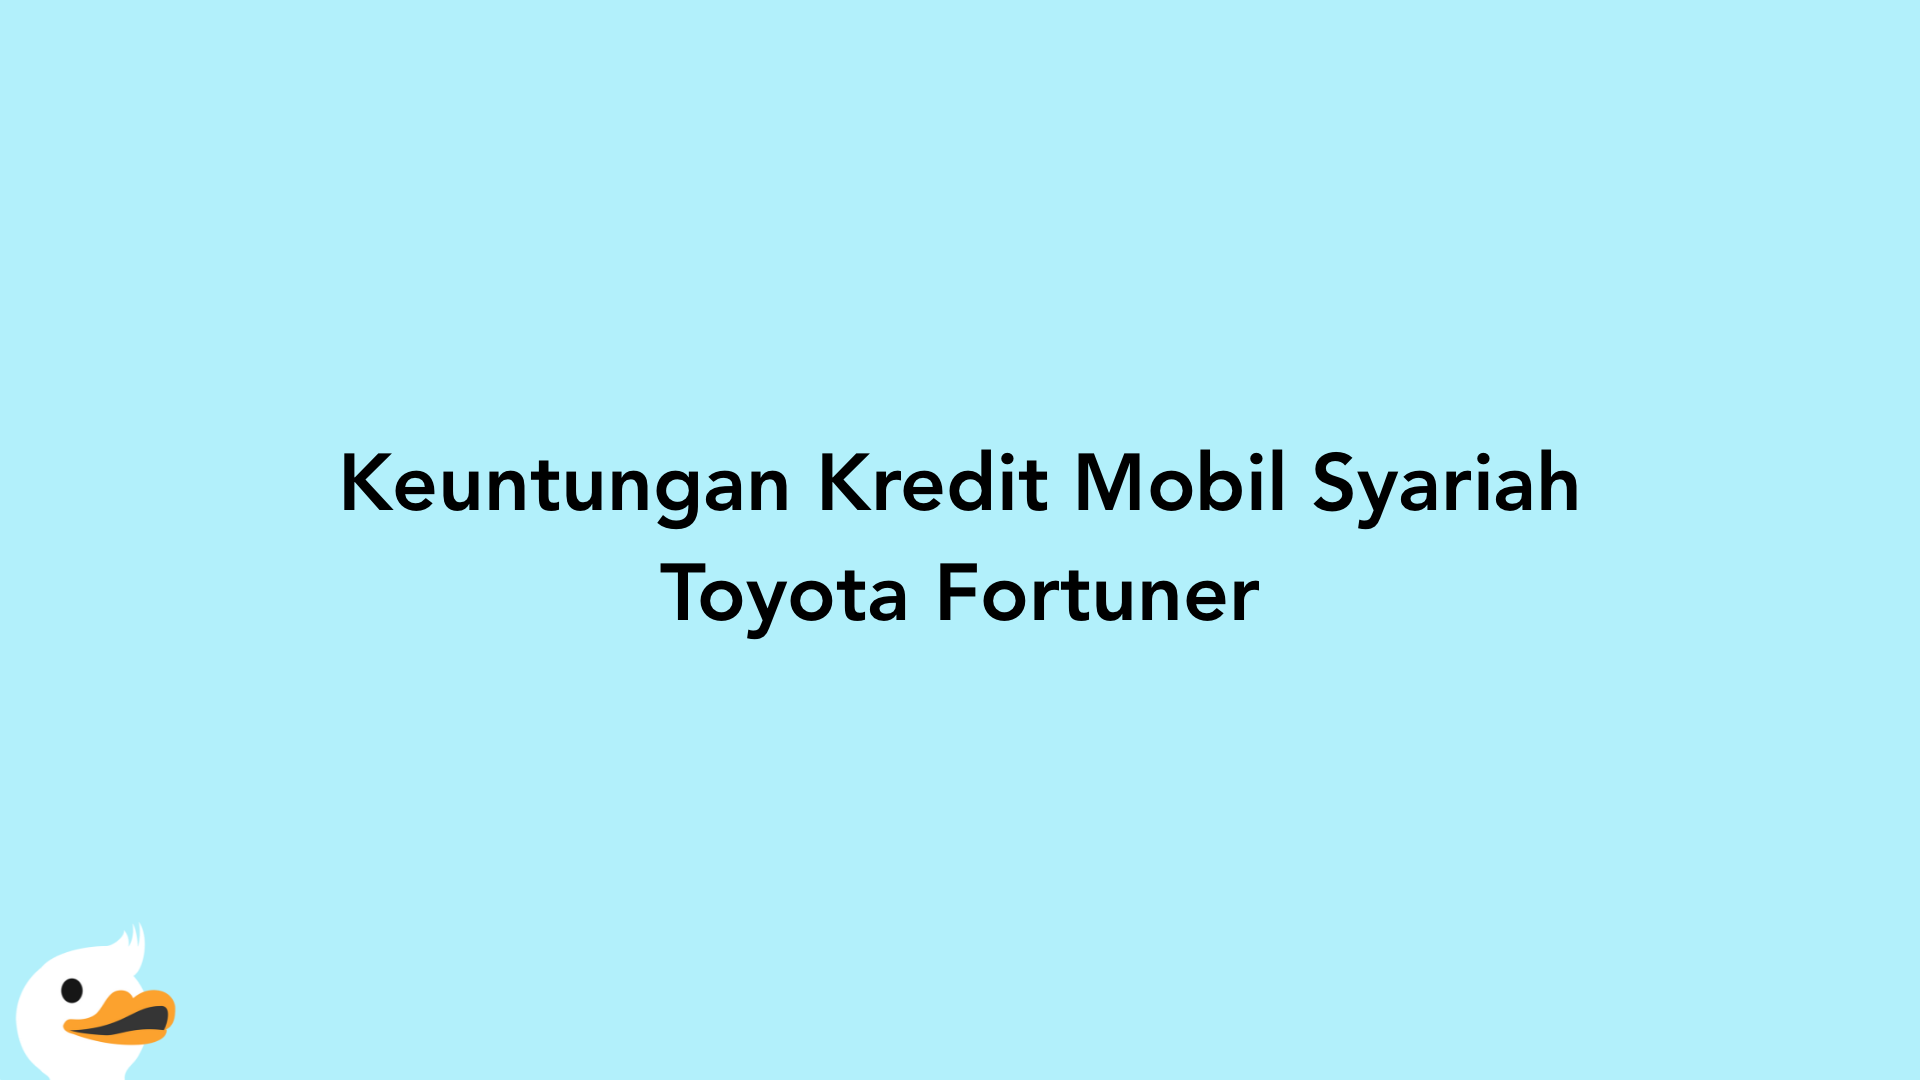 Keuntungan Kredit Mobil Syariah Toyota Fortuner